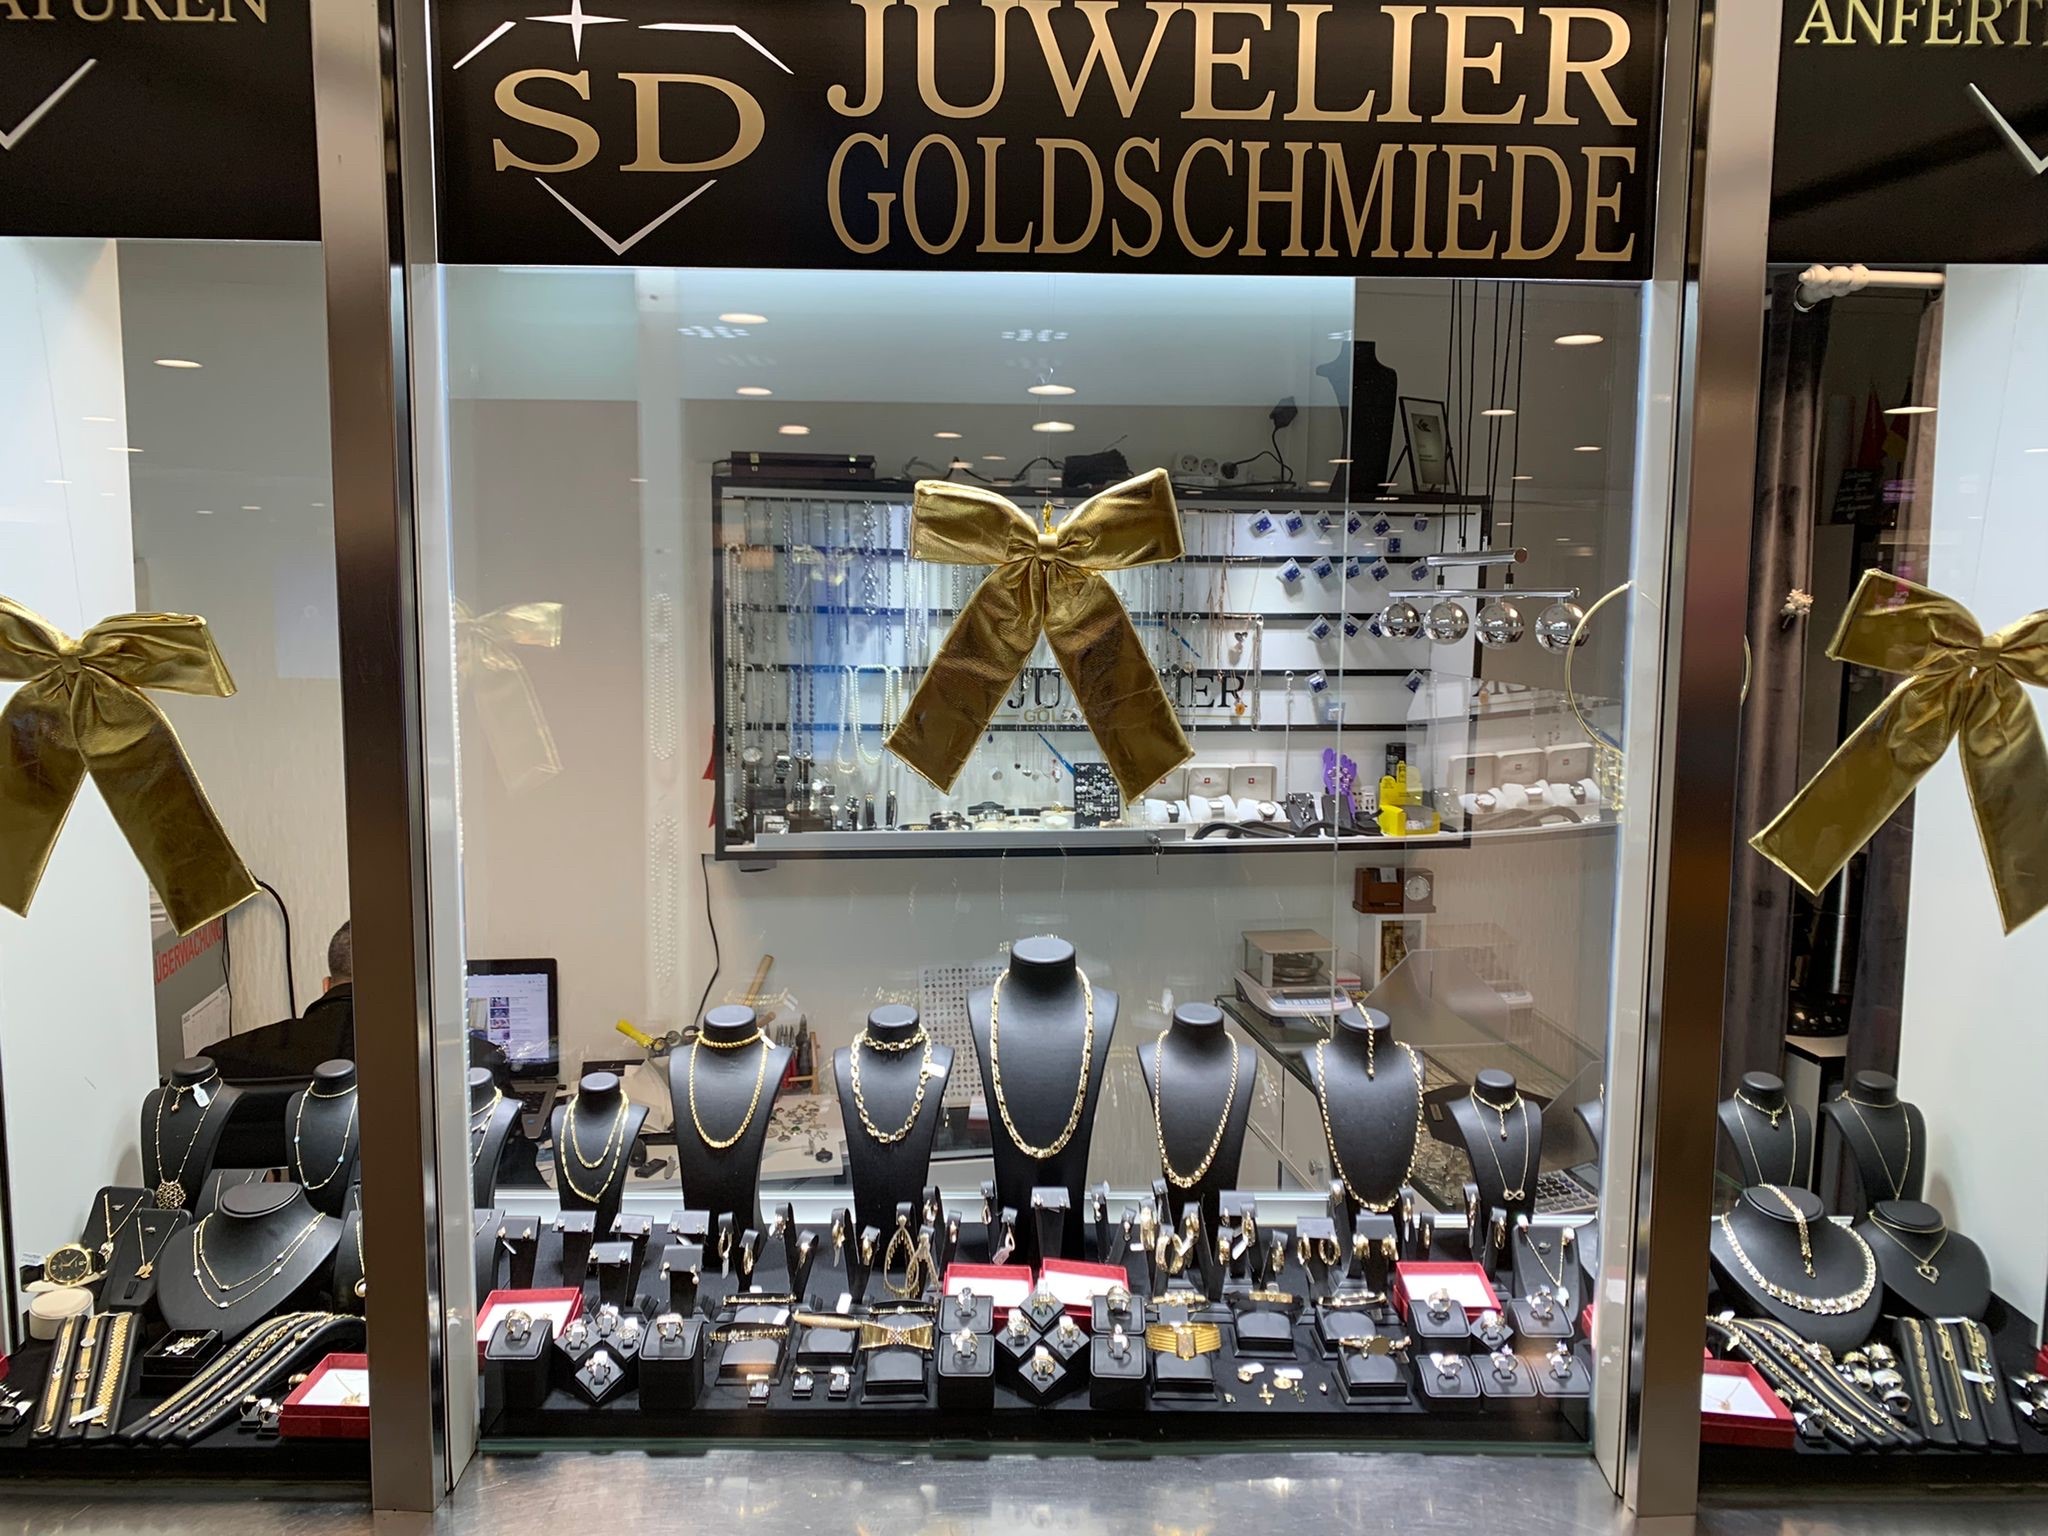 SD Juwelier Goldschmiede, Neumarkt 1 in Köln